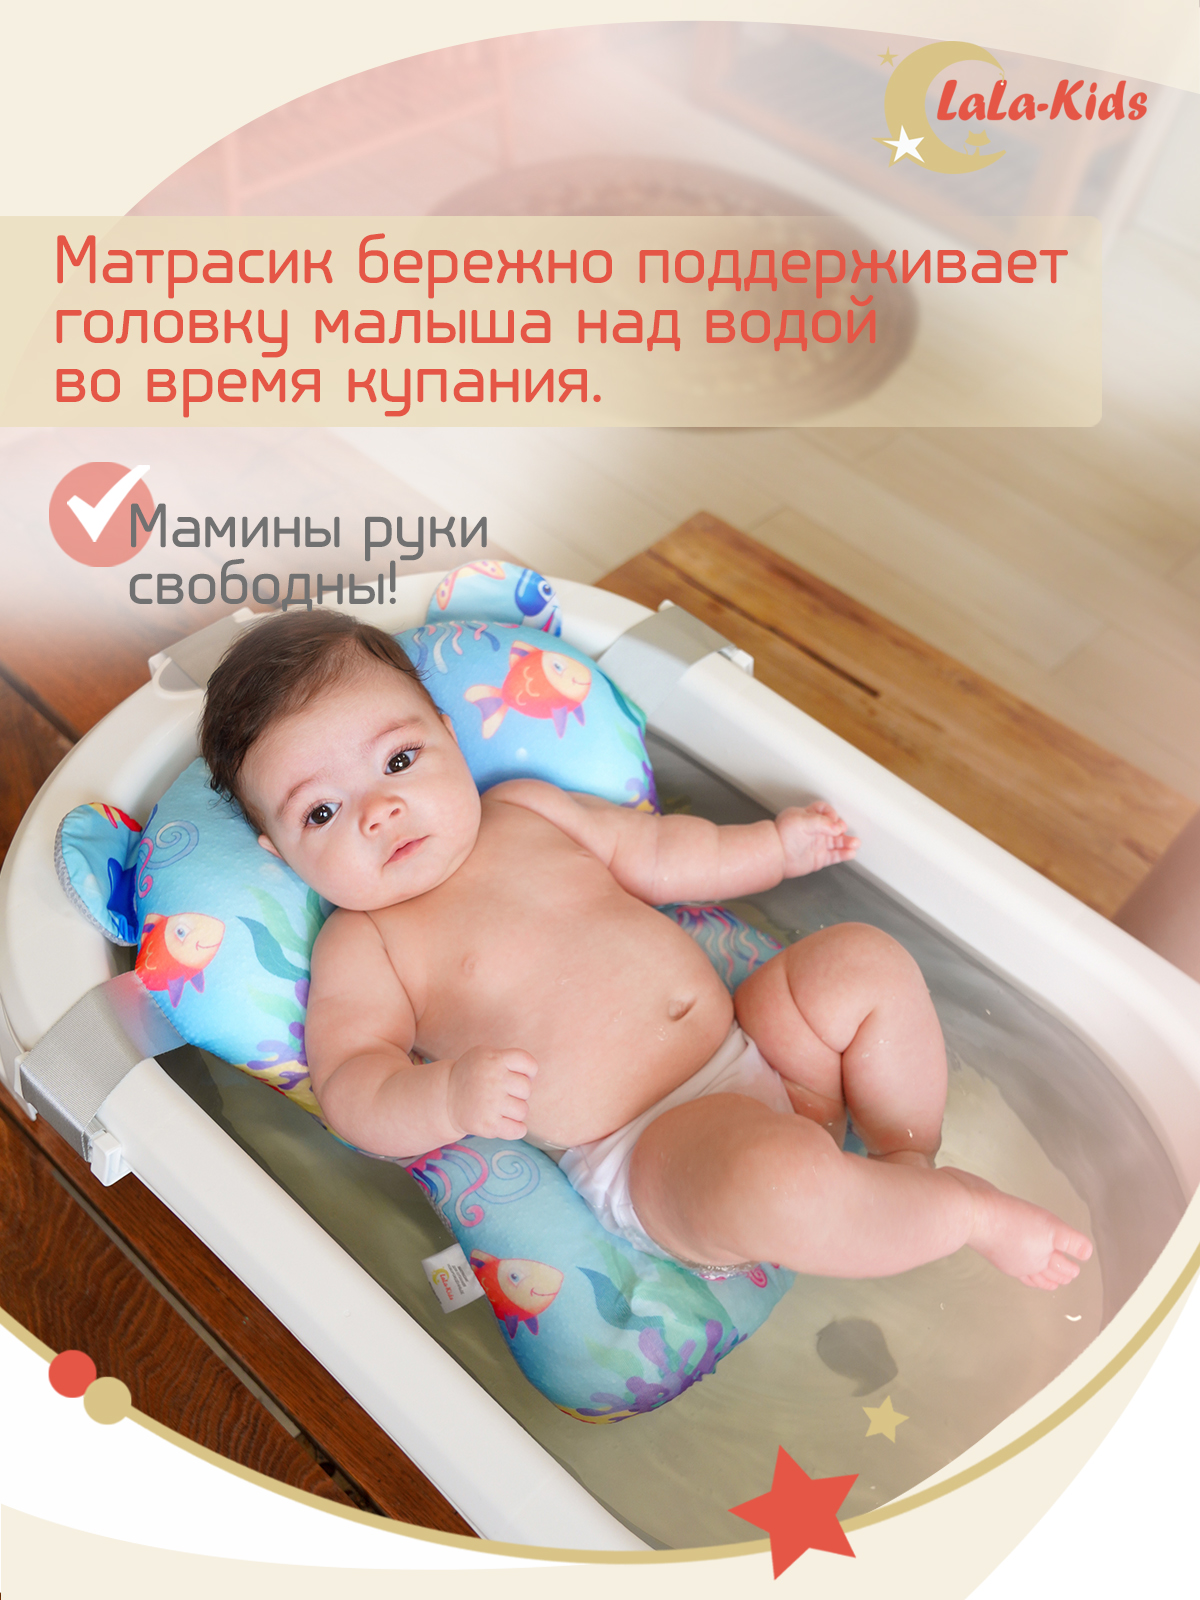 Детская ванночка с термометром LaLa-Kids складная с матрасиком для купания новорожденных - фото 9